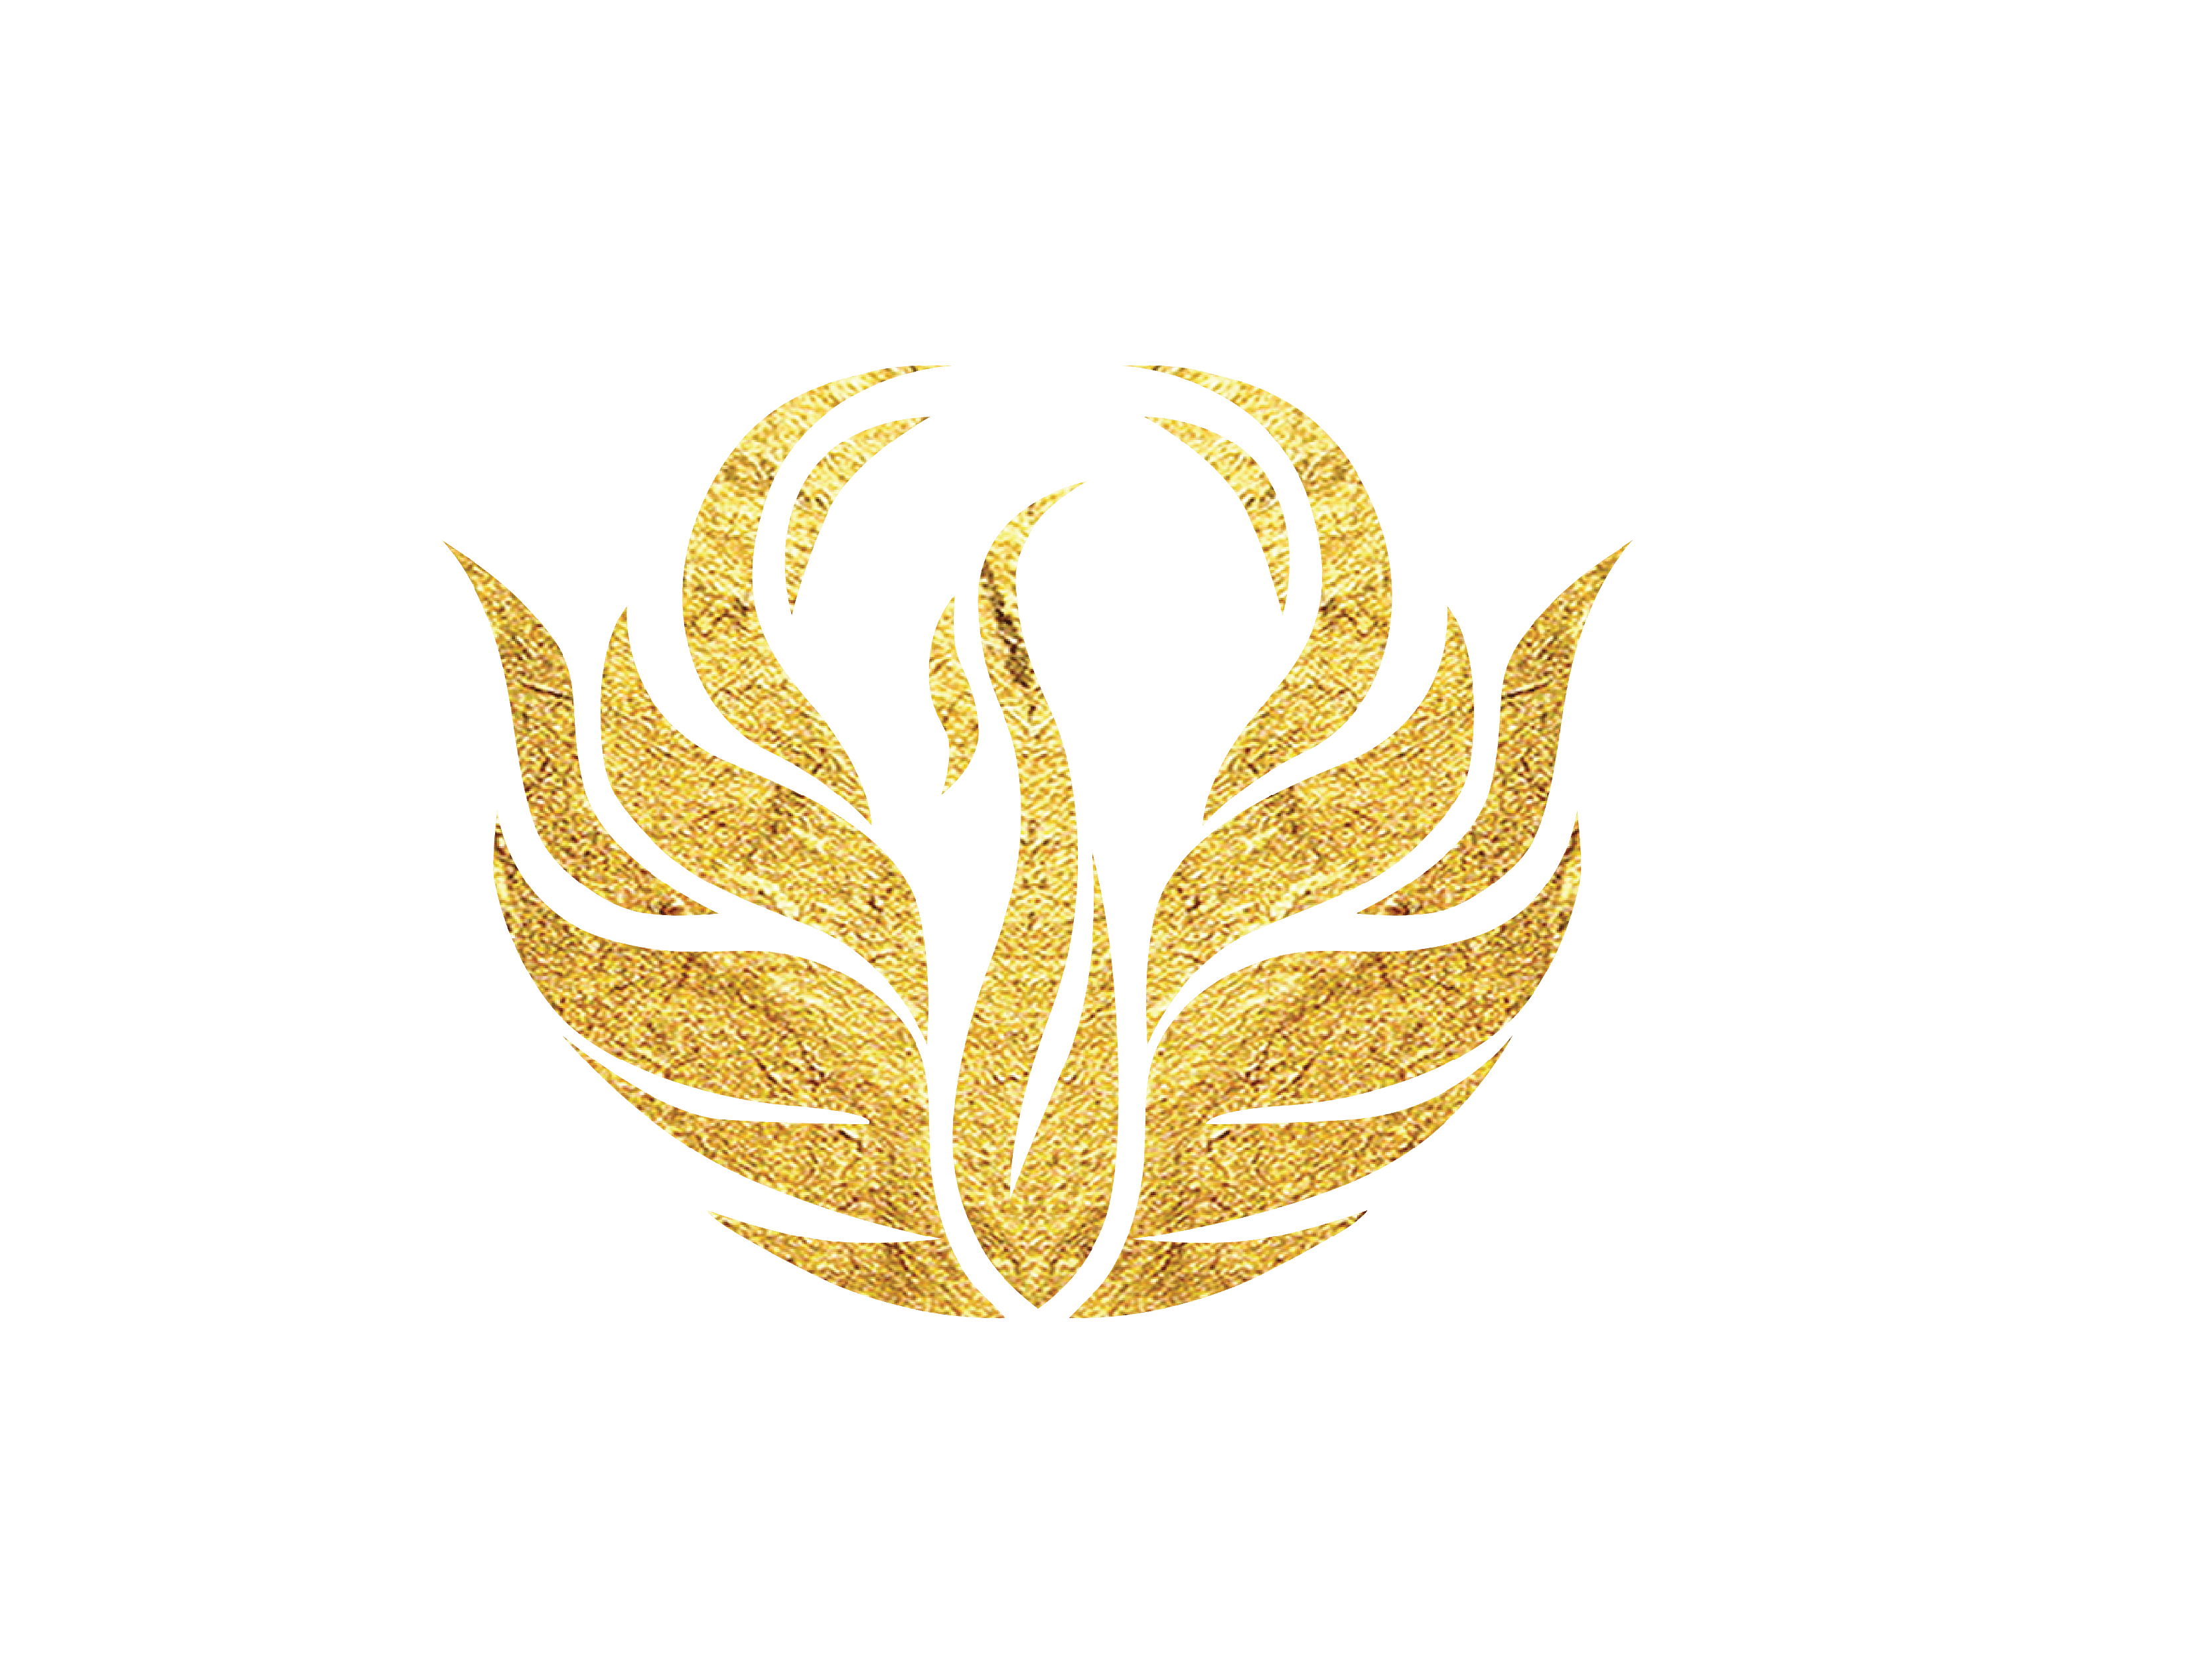 Gold Phoenix Logo - Golden Phoenix Award 2017 - International Media Coverage | Asia ...